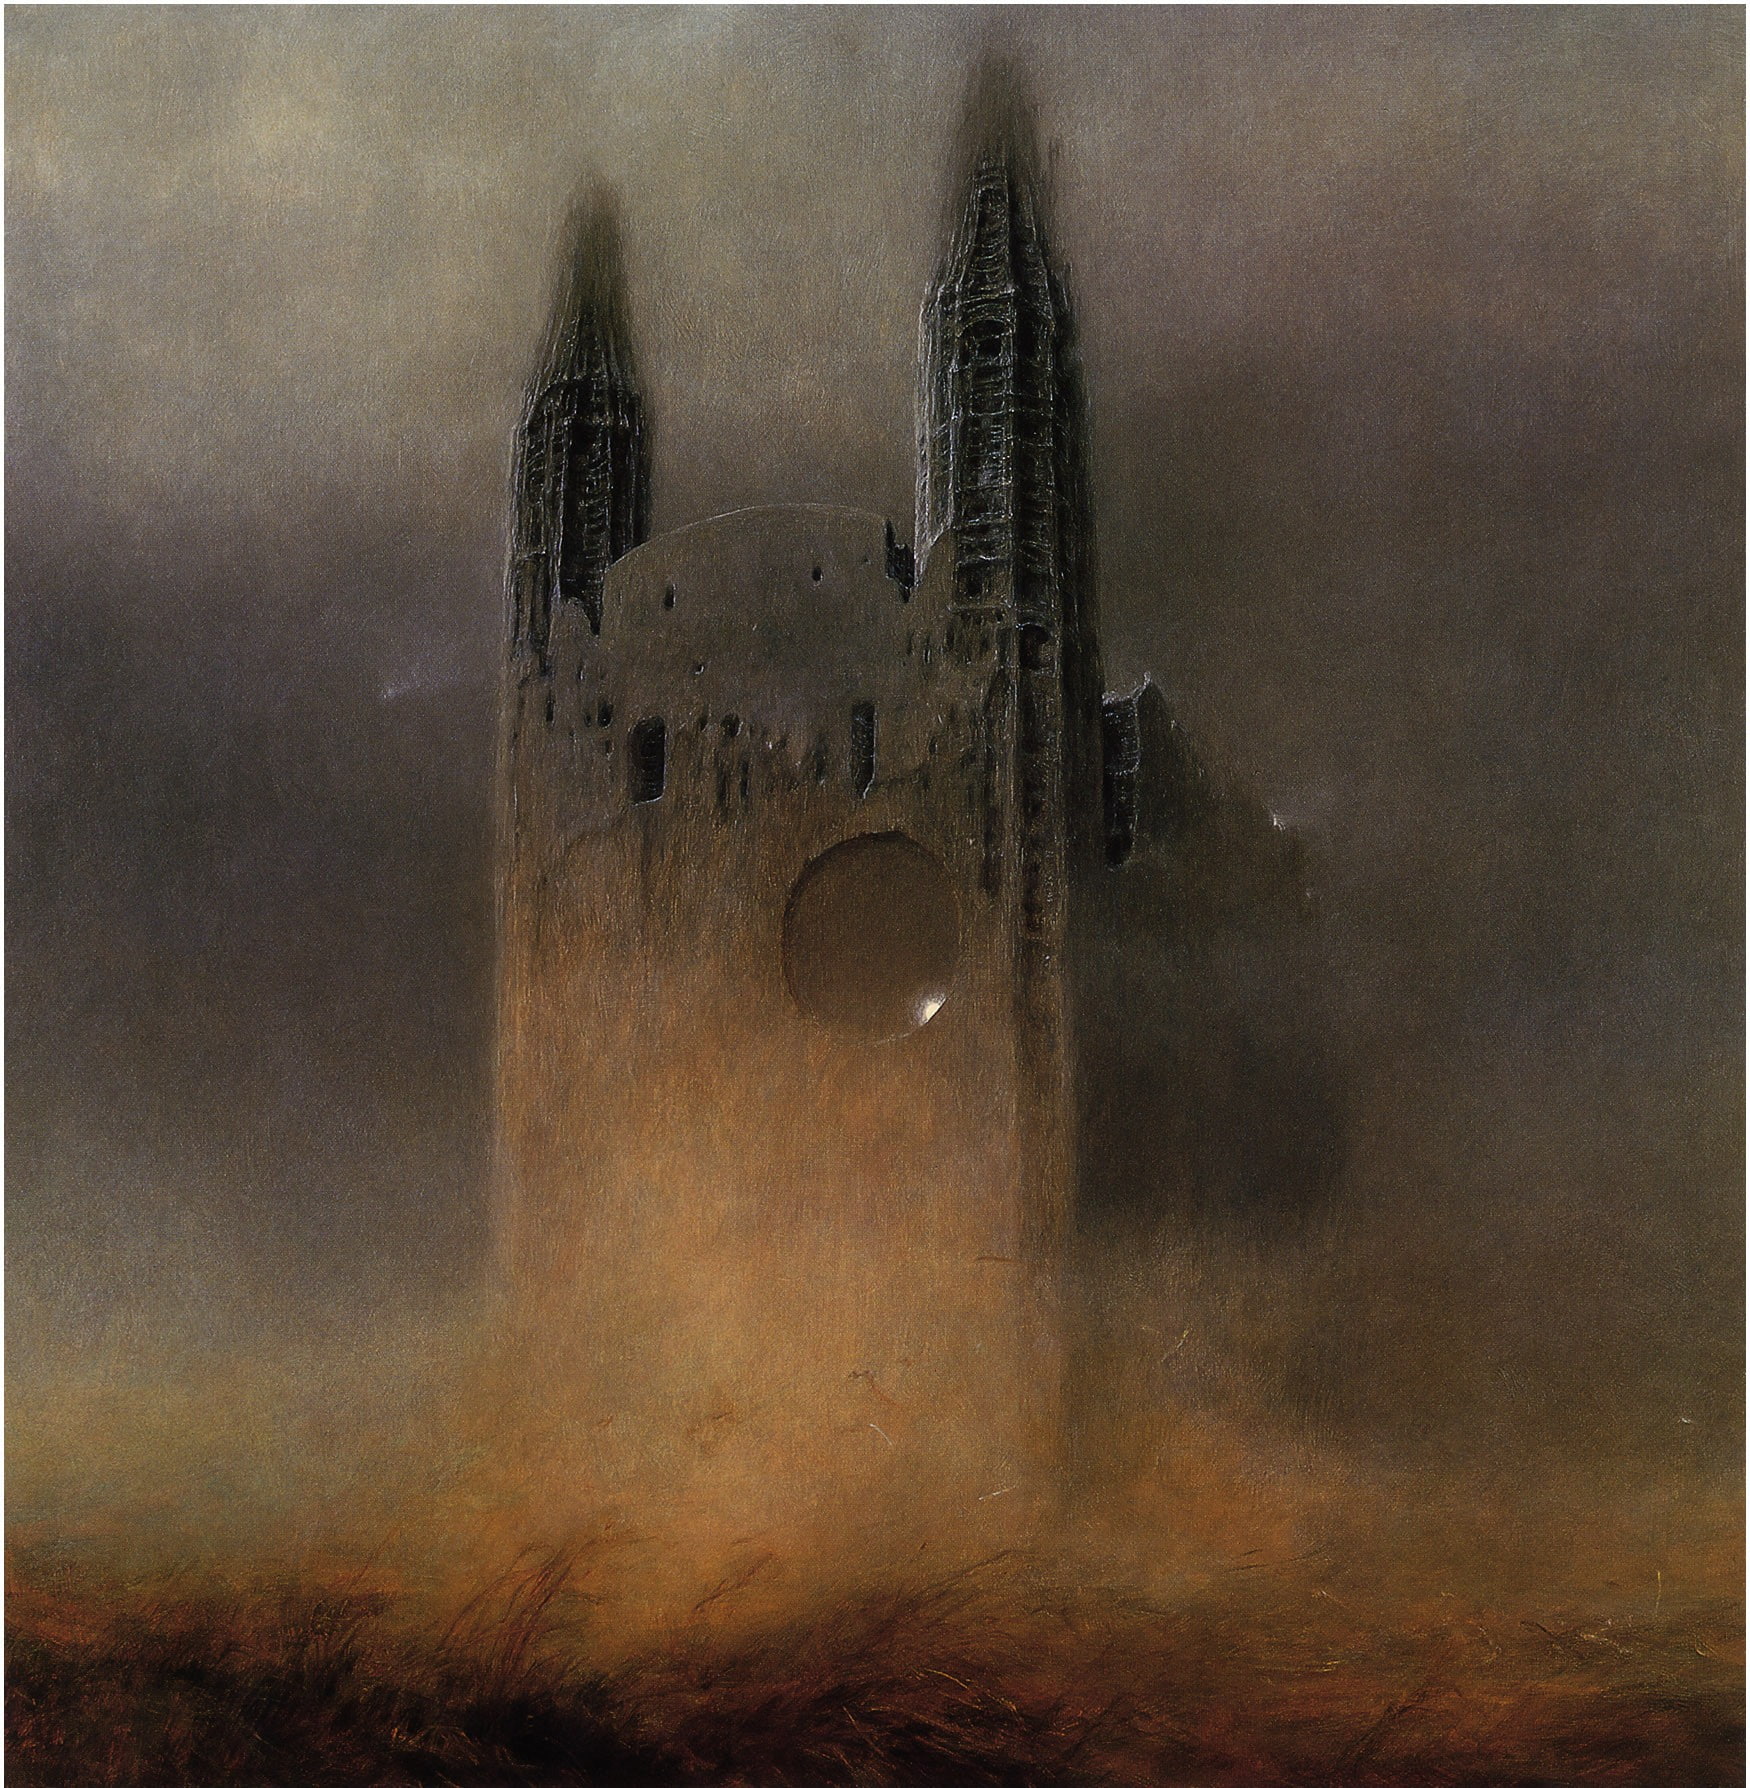 Zdzisław Beksiński, Artwork, Dark, Buildings, Old, Towers